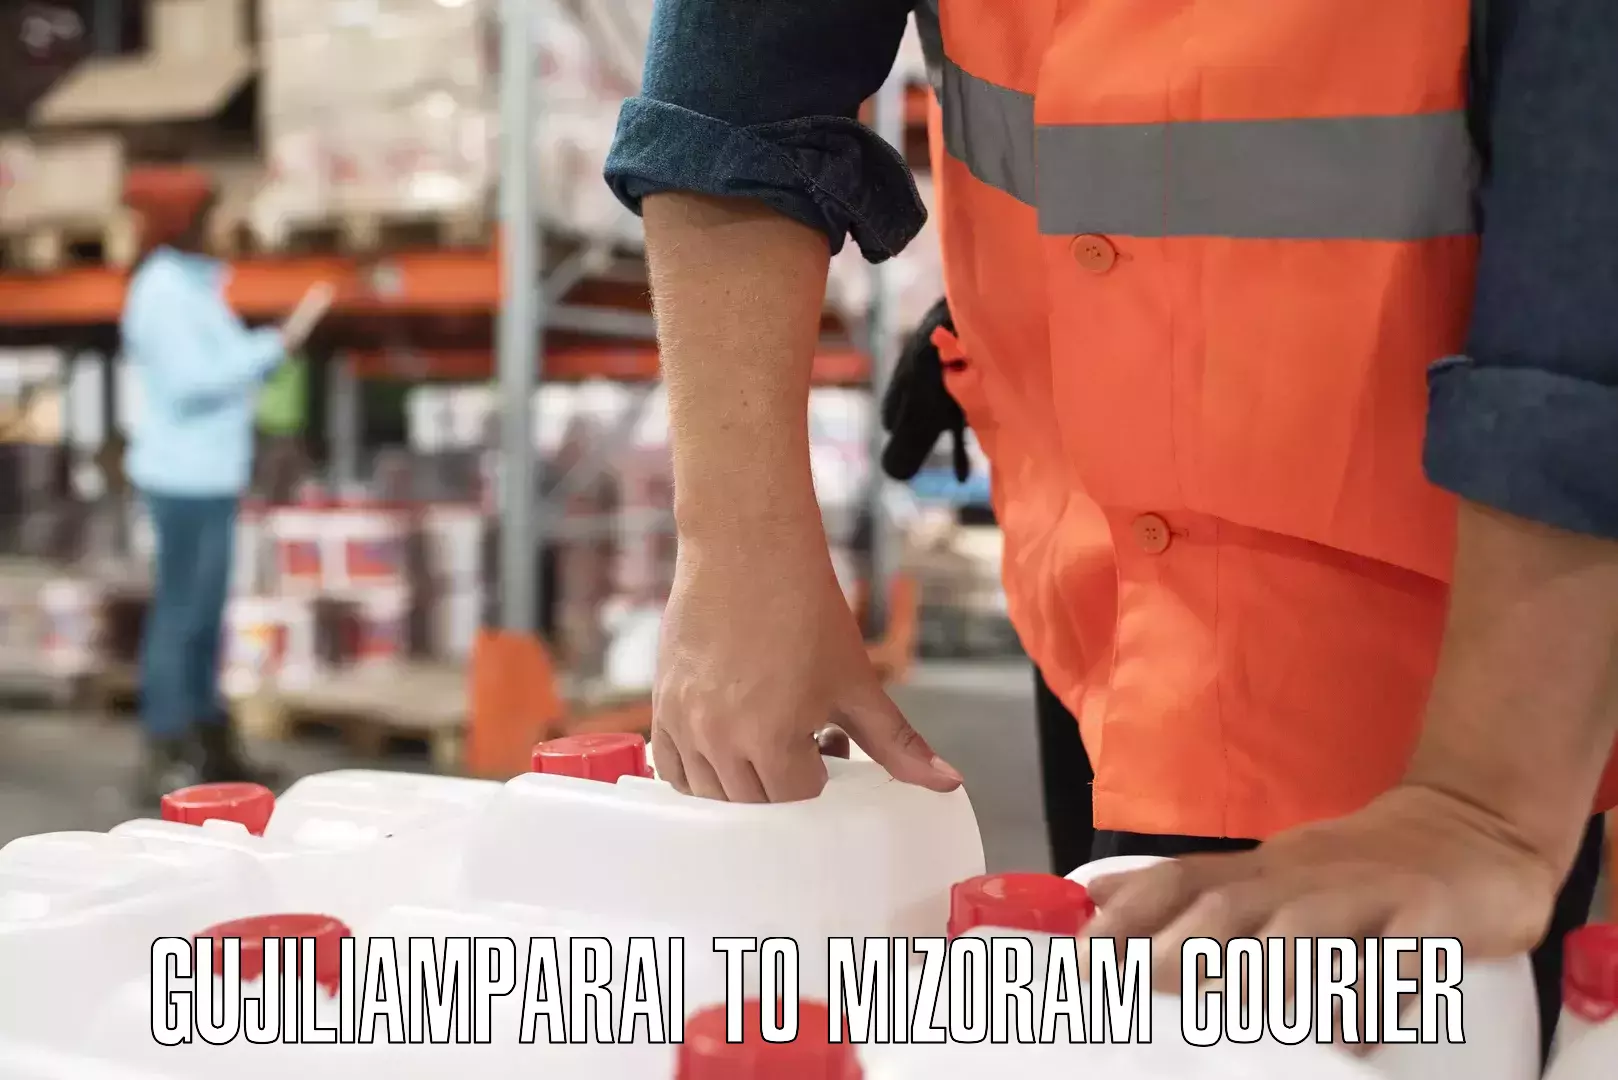 Quality courier partnerships Gujiliamparai to Aizawl